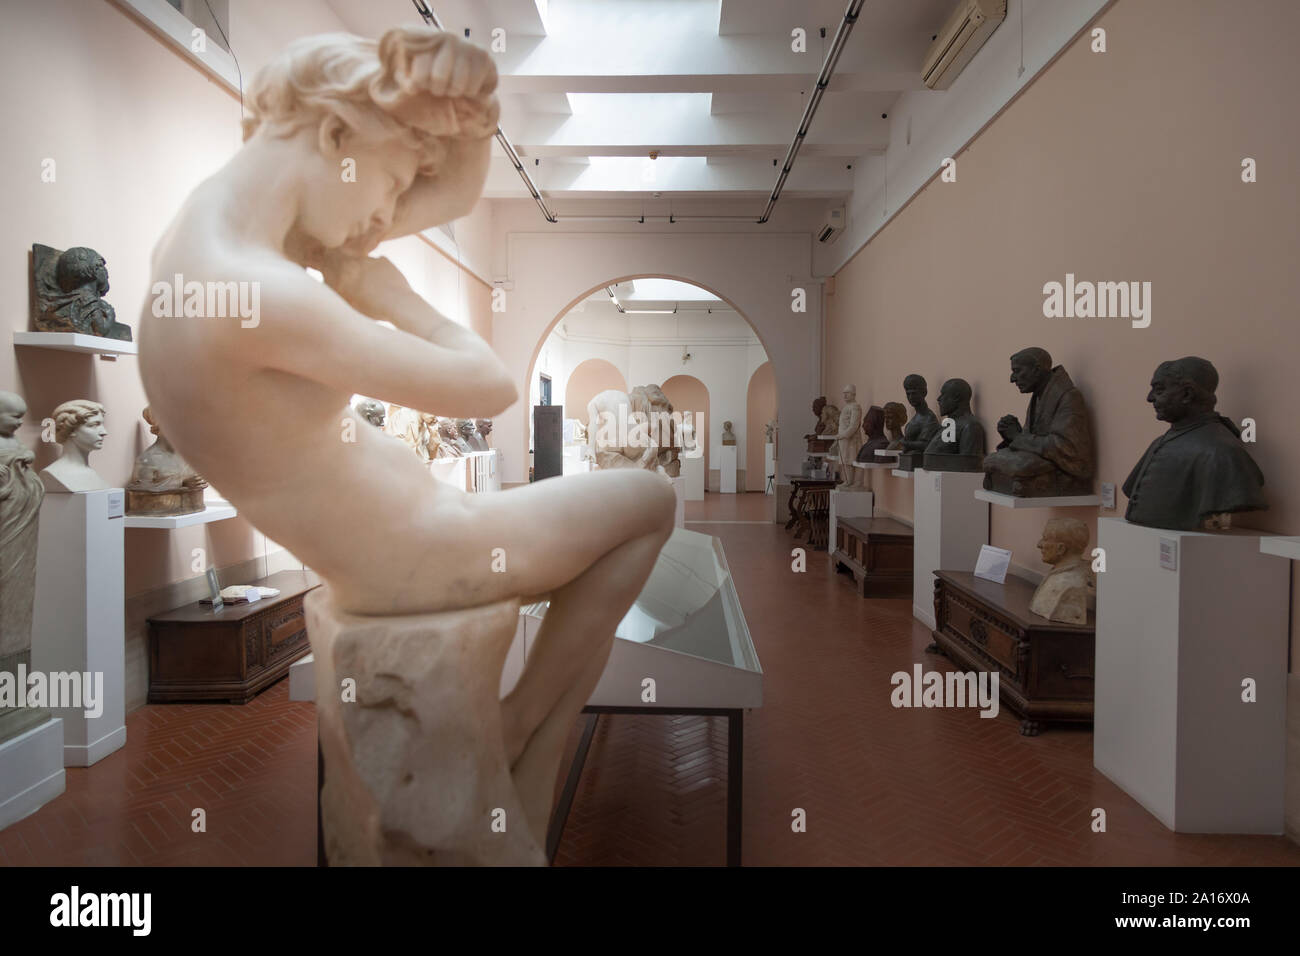 Sculpture 'Pudore'  at Museo Pietro Canonica a Villa Borghese, Rome, Italy Stock Photo